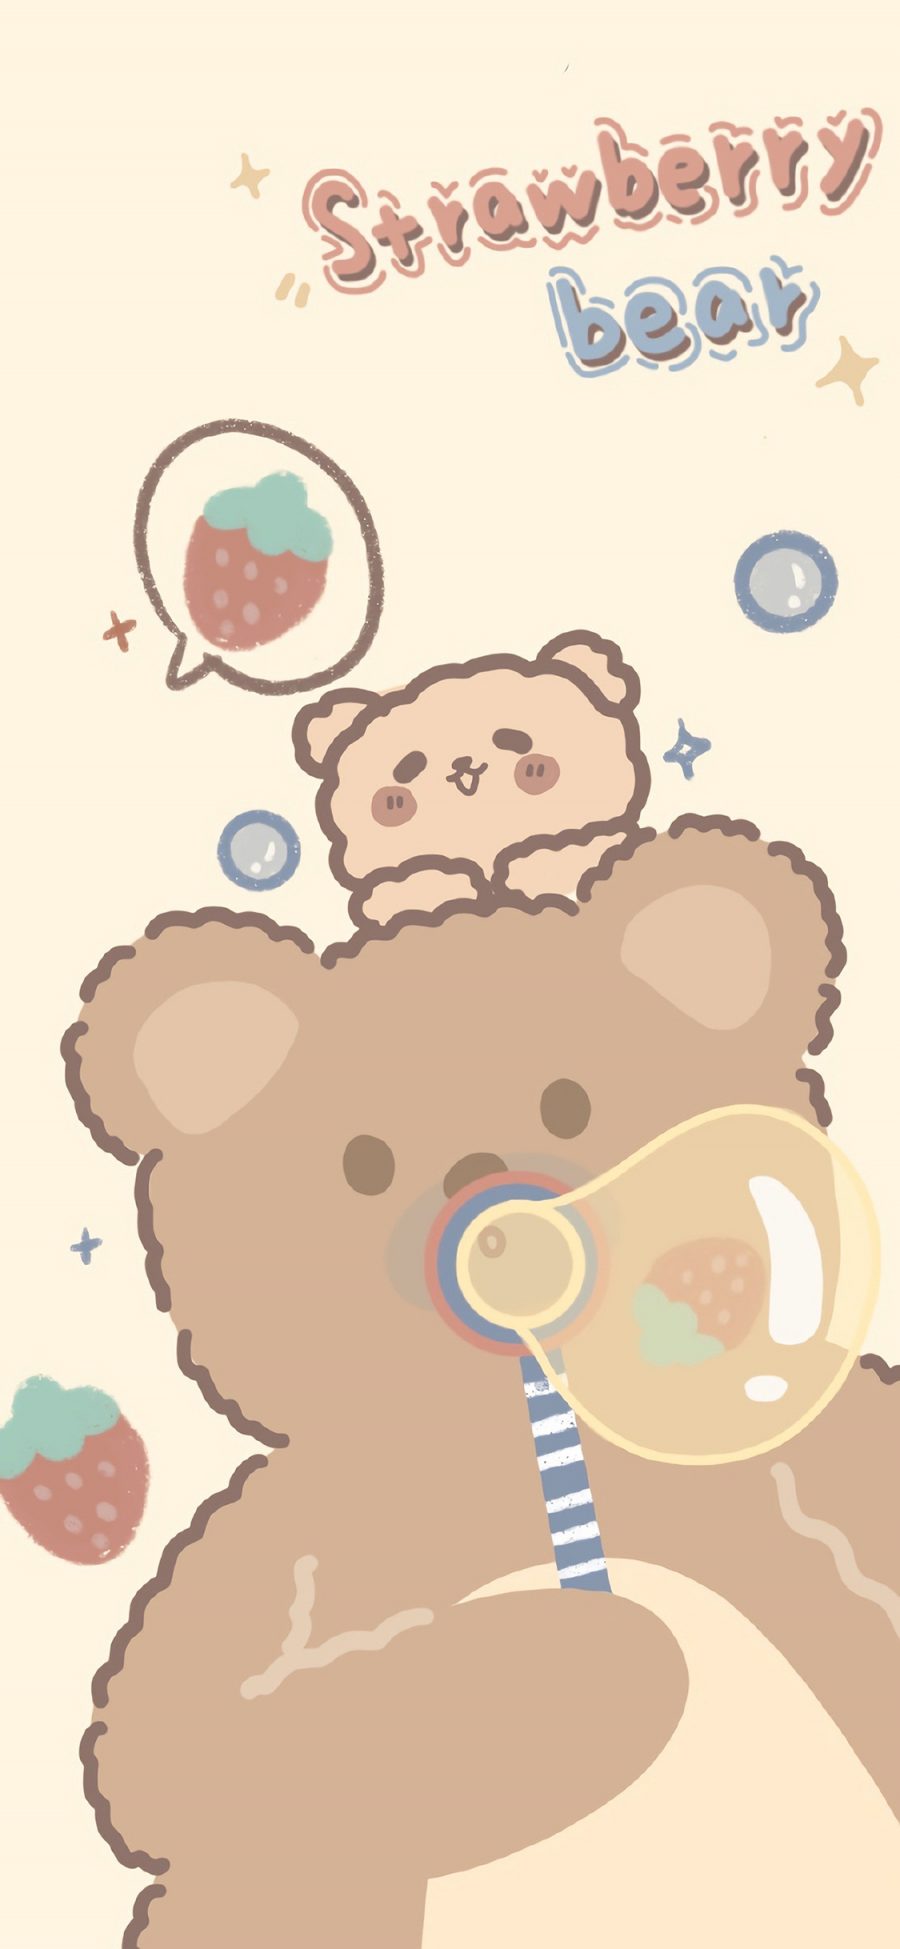 [2436×1125]草莓熊 吹泡泡 卡通 可爱 苹果手机动漫壁纸图片